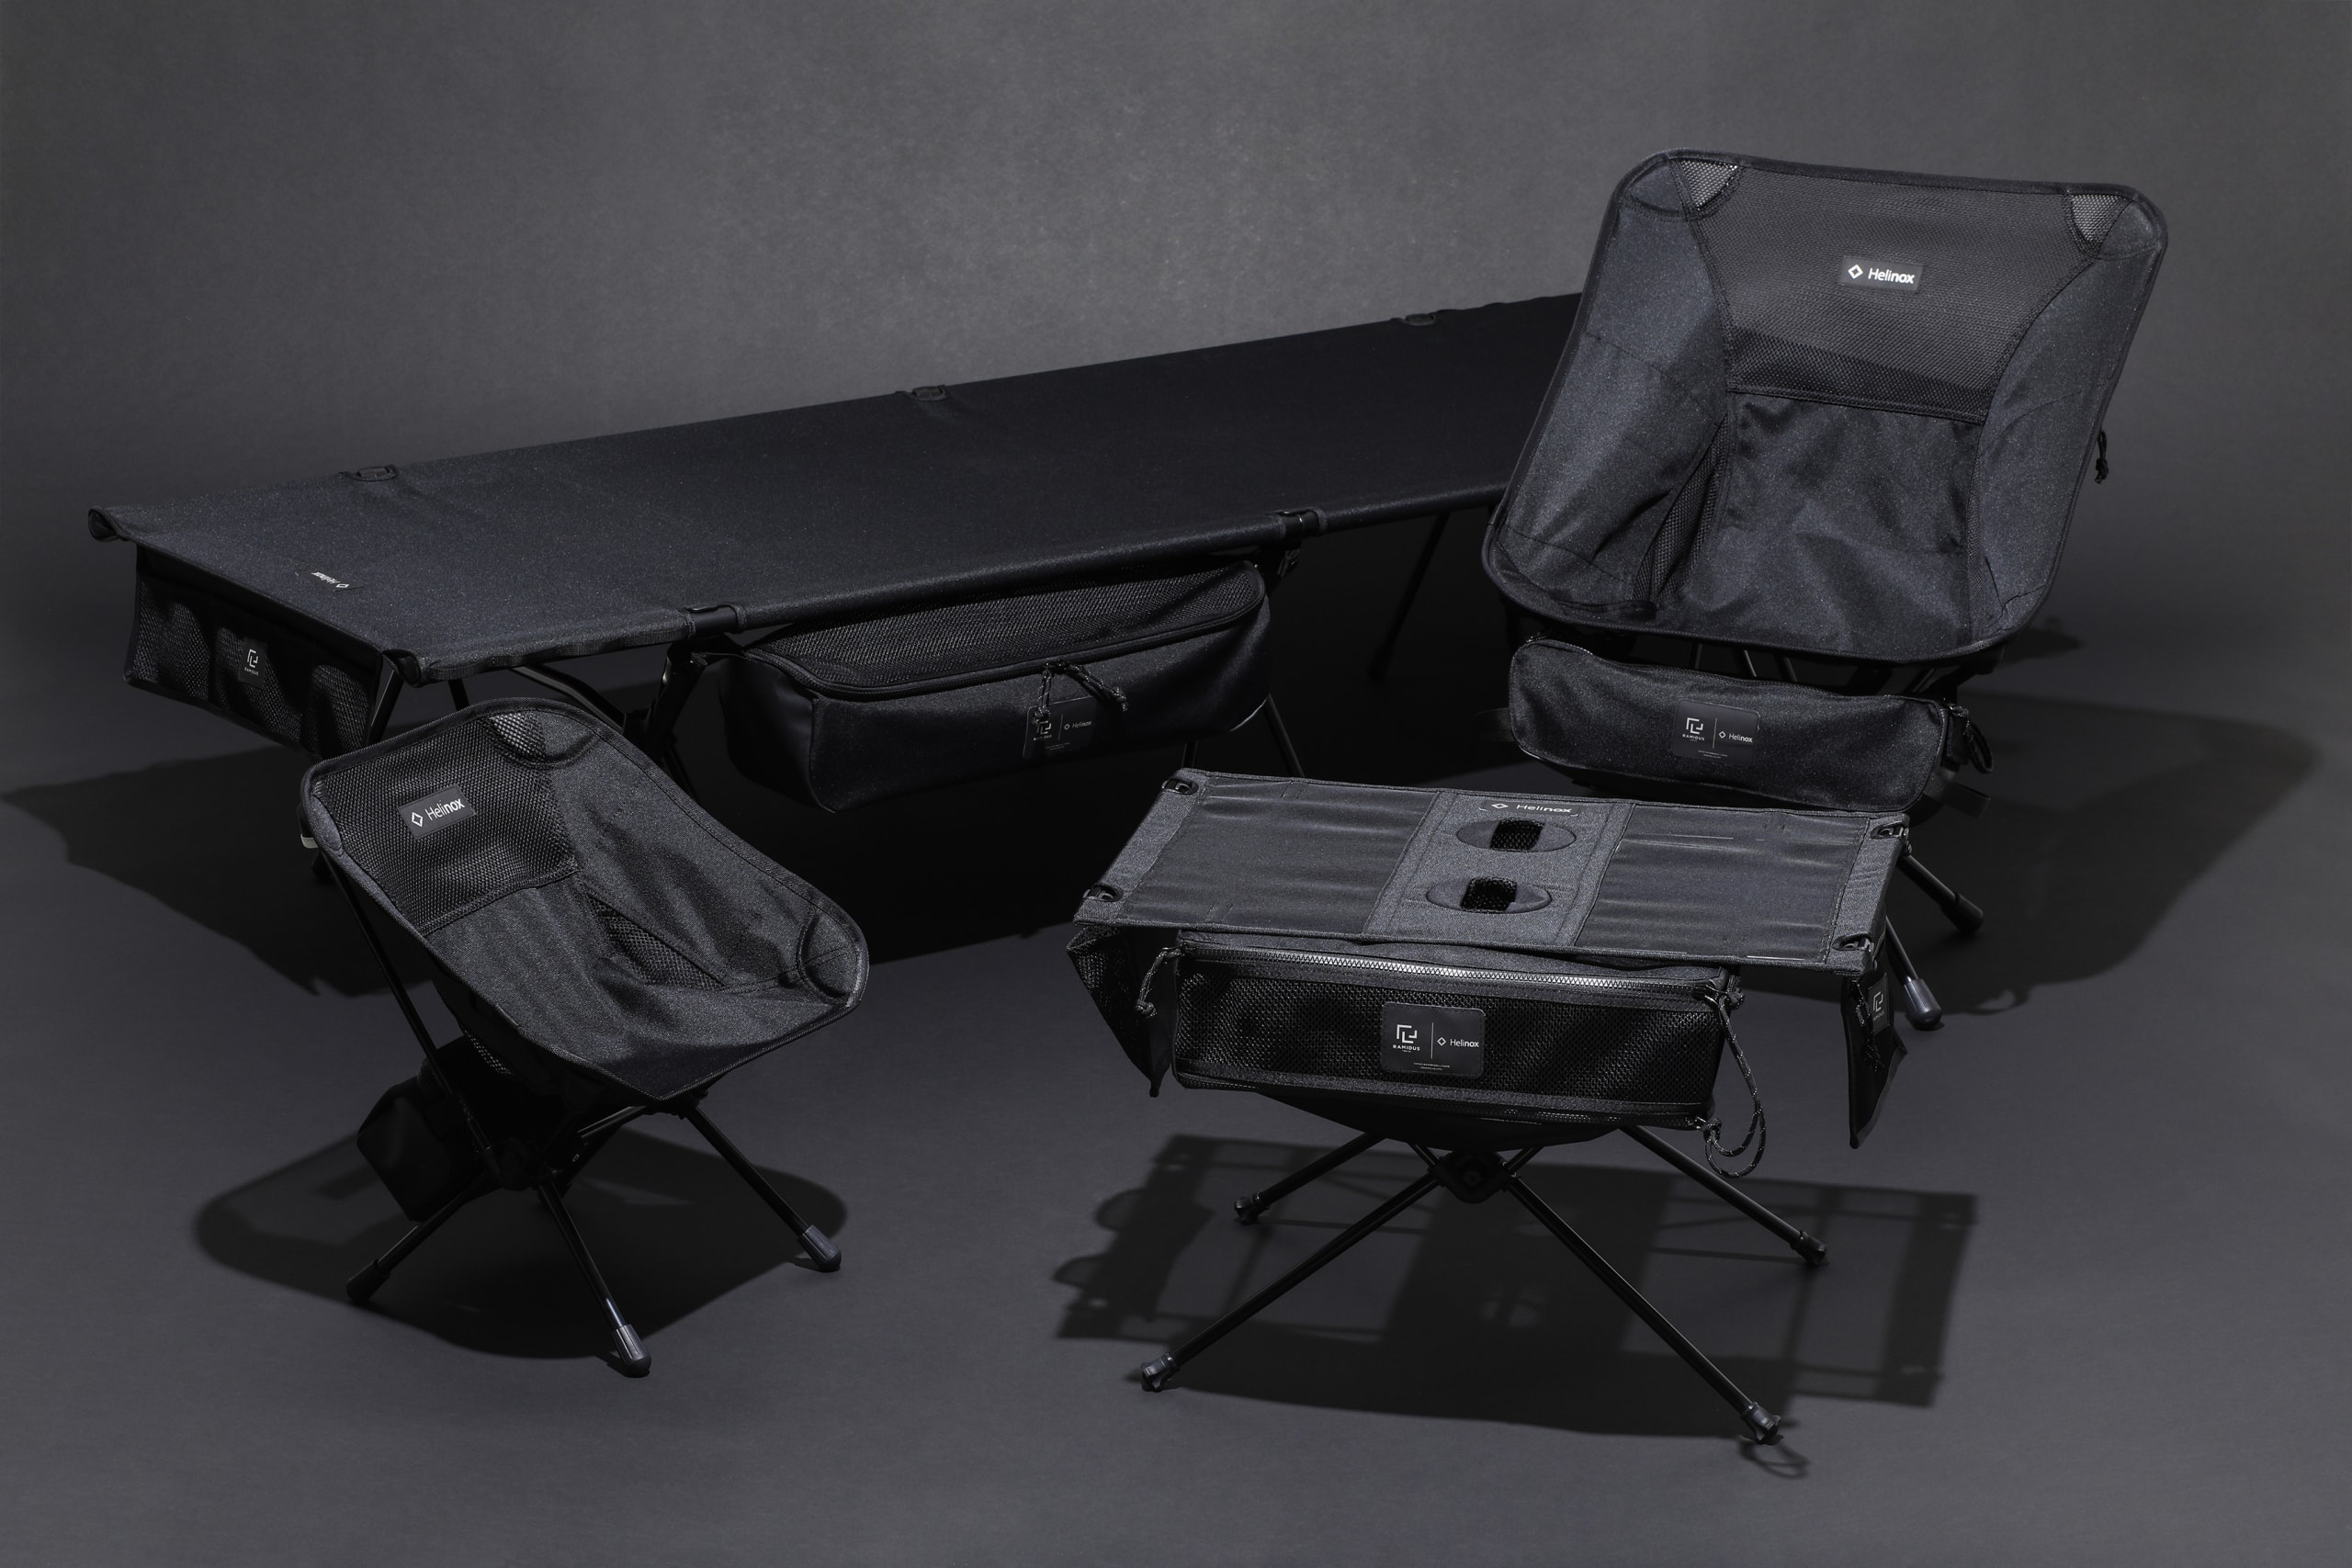 헬리녹스 x 라미더스 협업 가방 및 캠핑용품 컬렉션 출시, 일본, 가방 브랜드, 협업 아이템